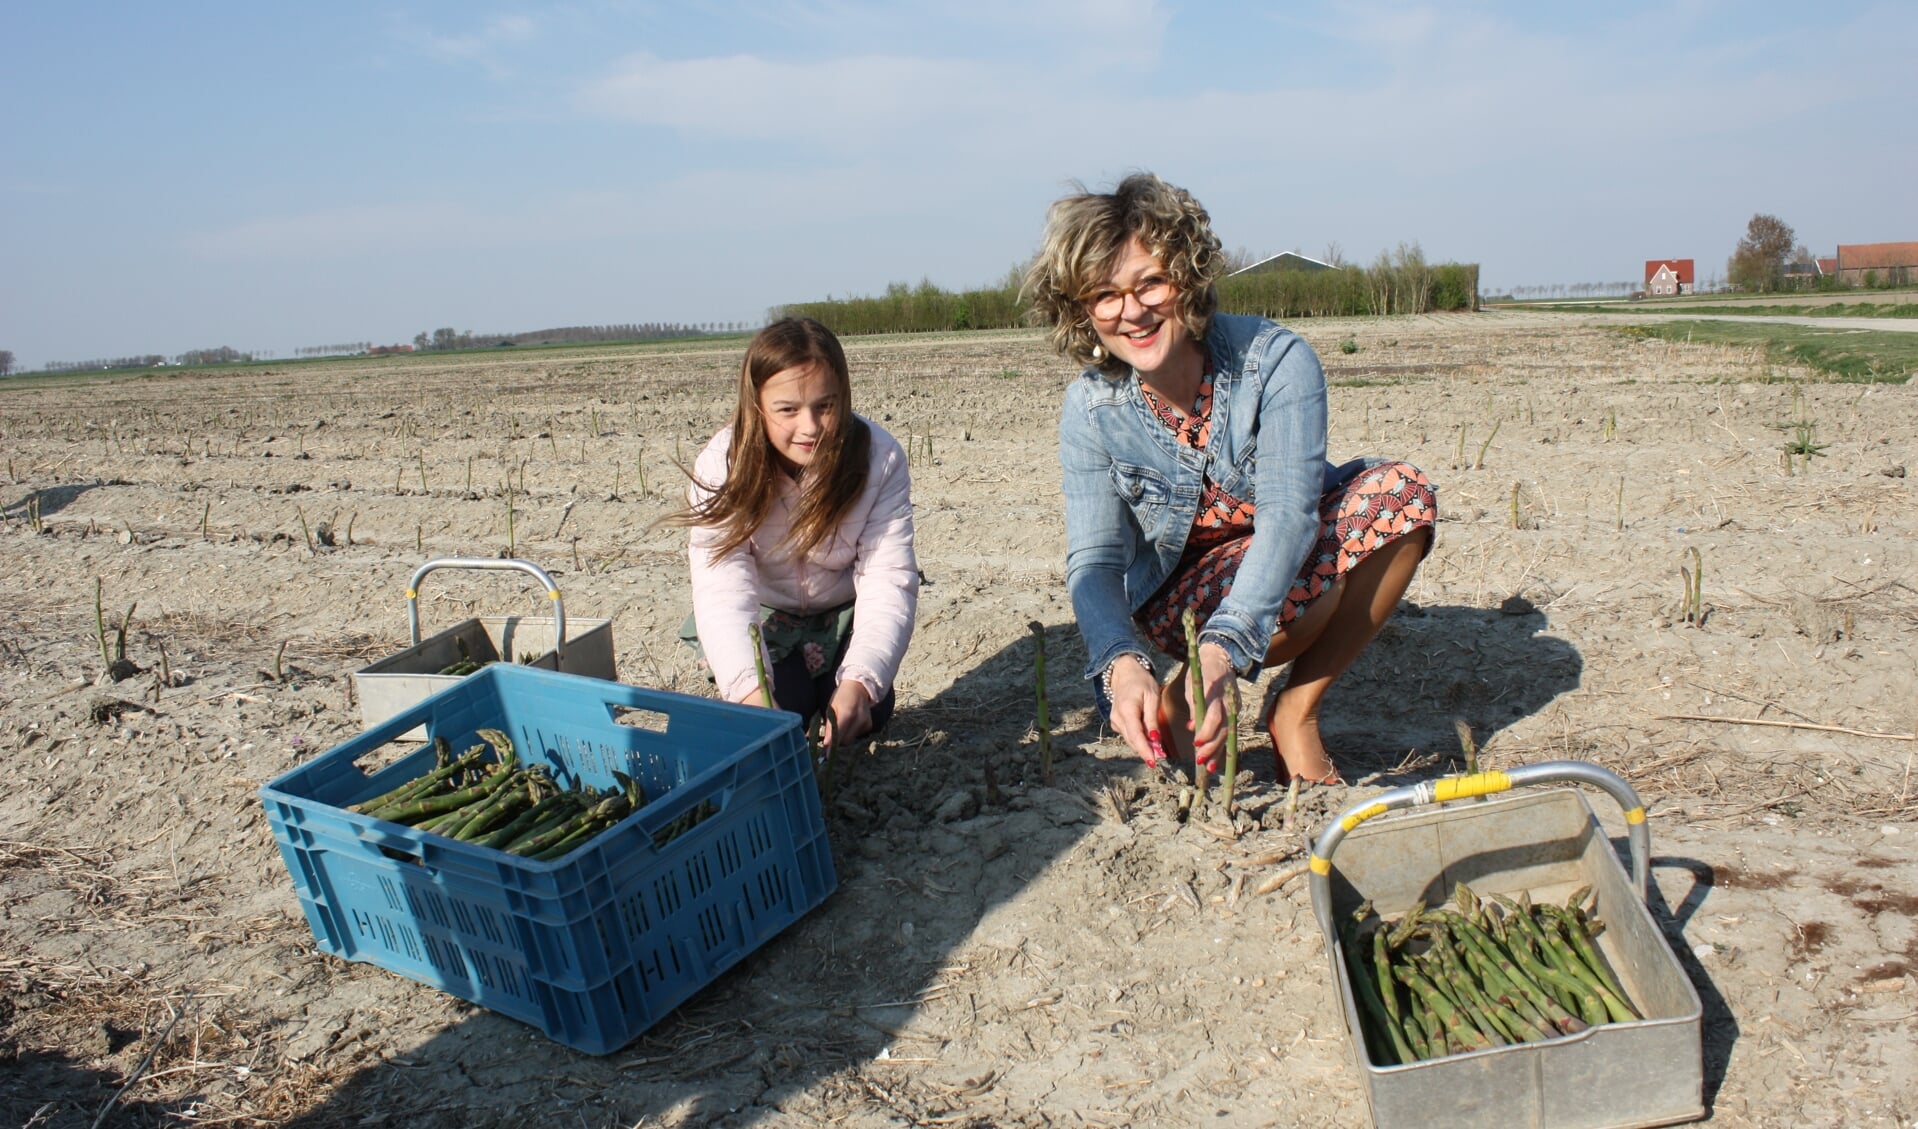 Burgemeester Ada Grootenboer snijdt de eerste asperges op donderdag 18 april, samen met een dochter van de aspergeboer.